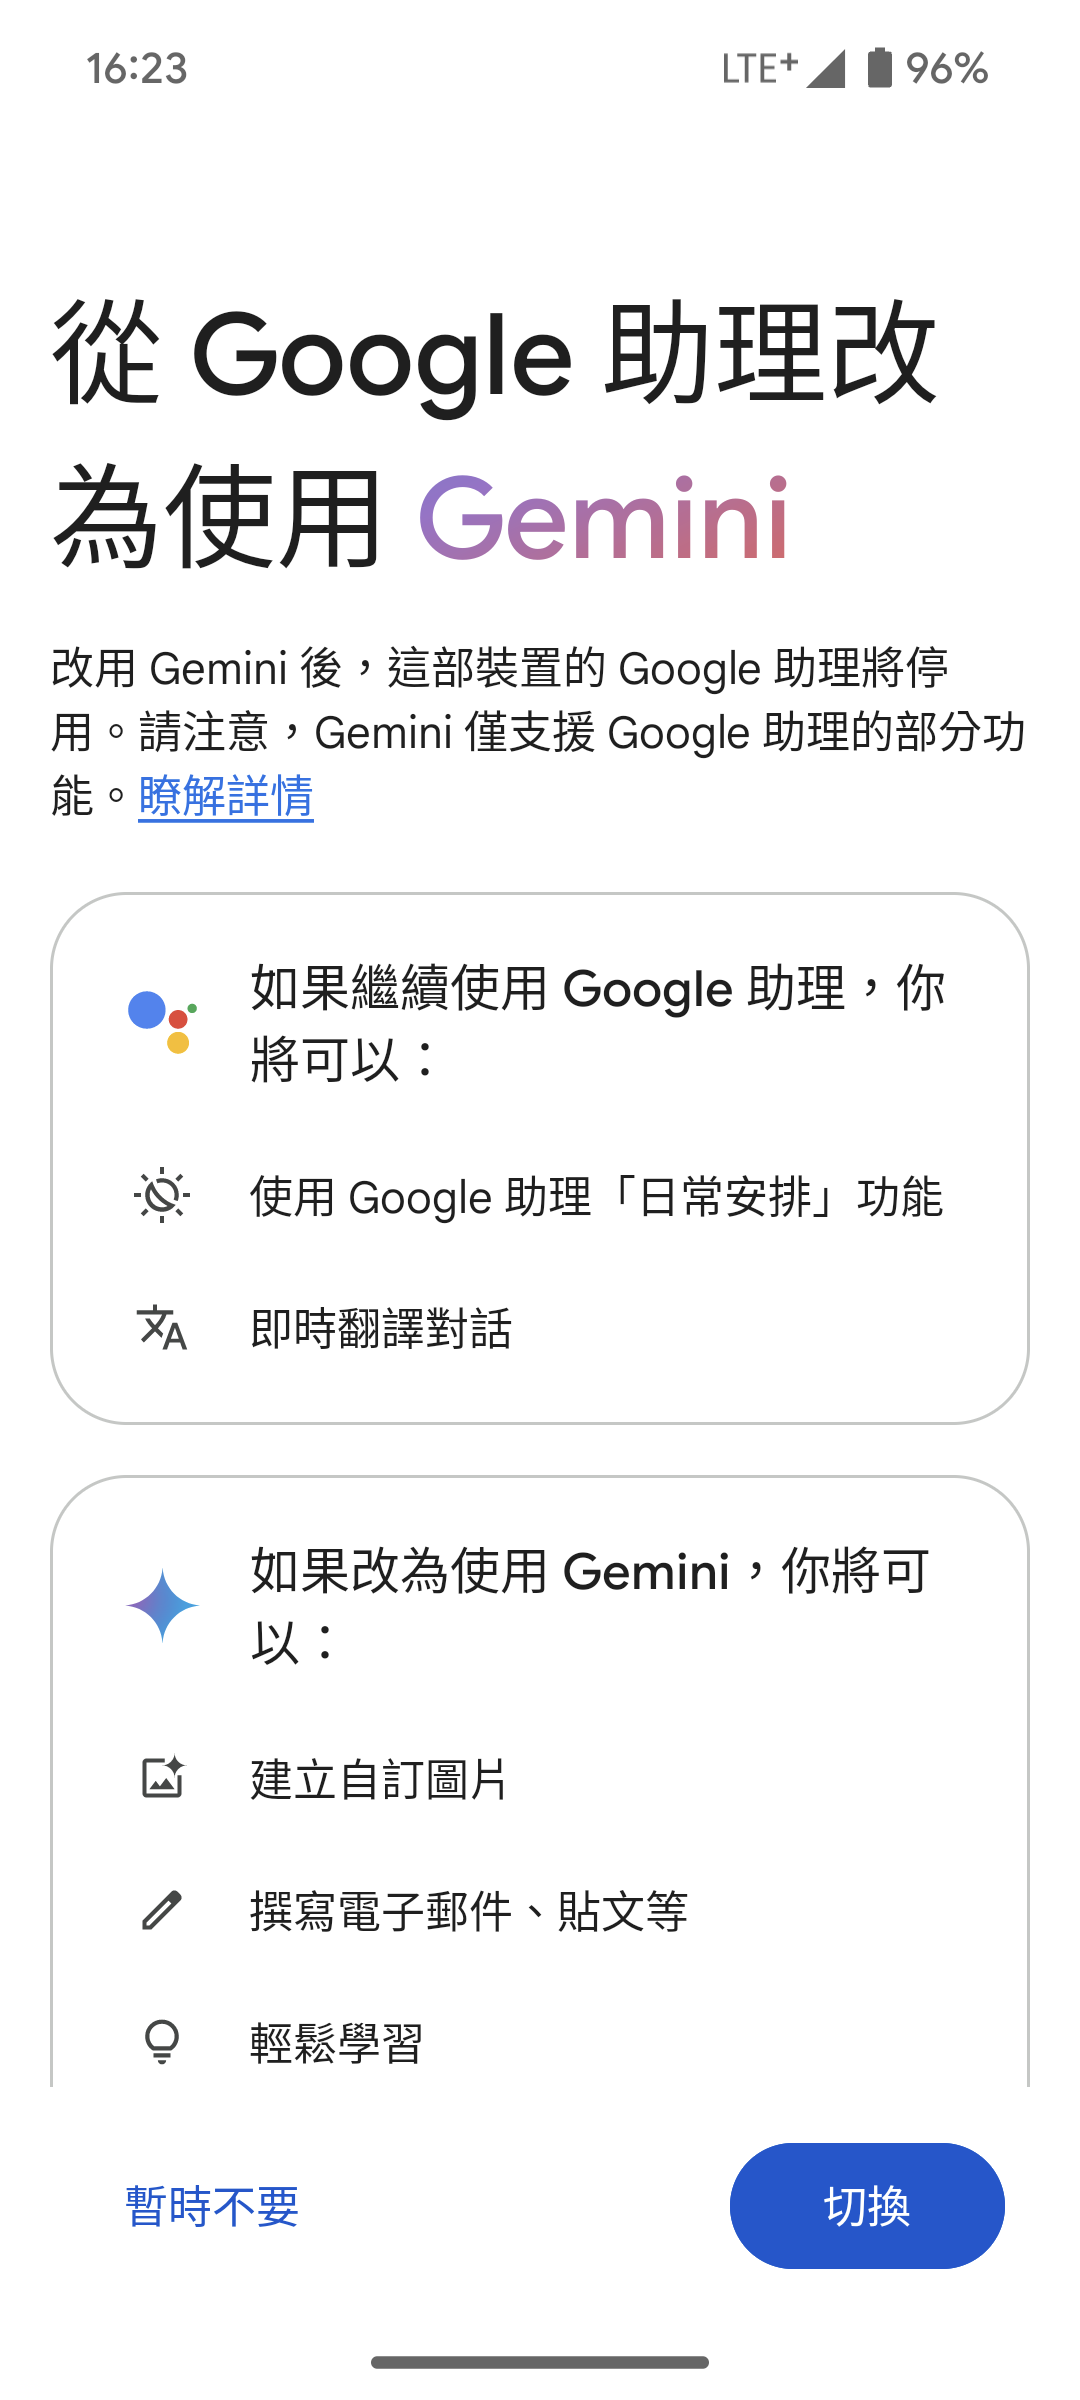 切換 Gemini 替代原本的 Google 助理